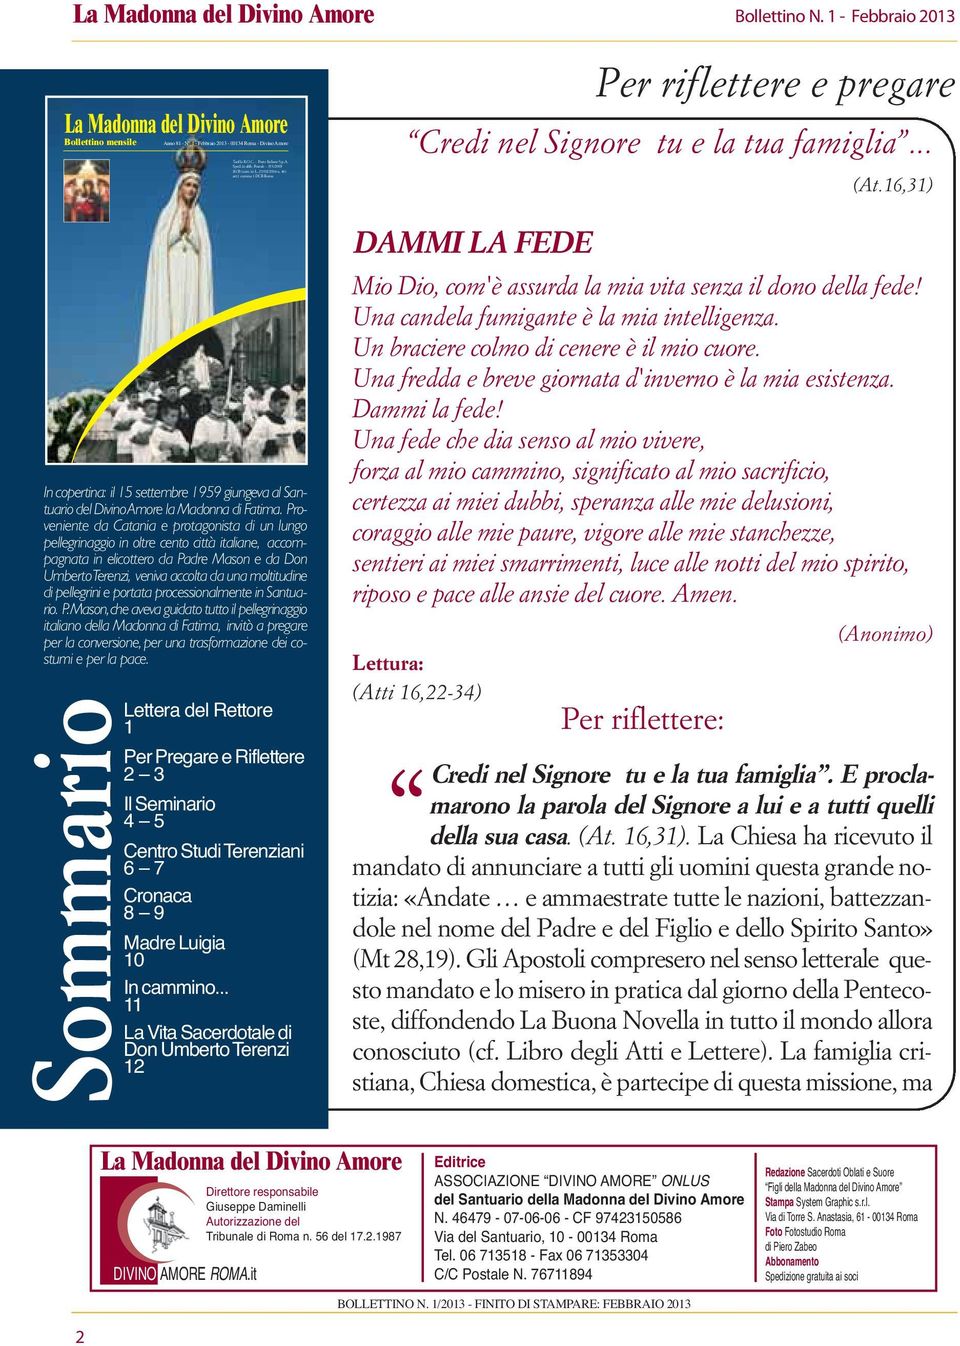 16,31) In copertina: il 15 settembre 1959 giungeva al Santuario del Divino Amore la Madonna di Fatima.